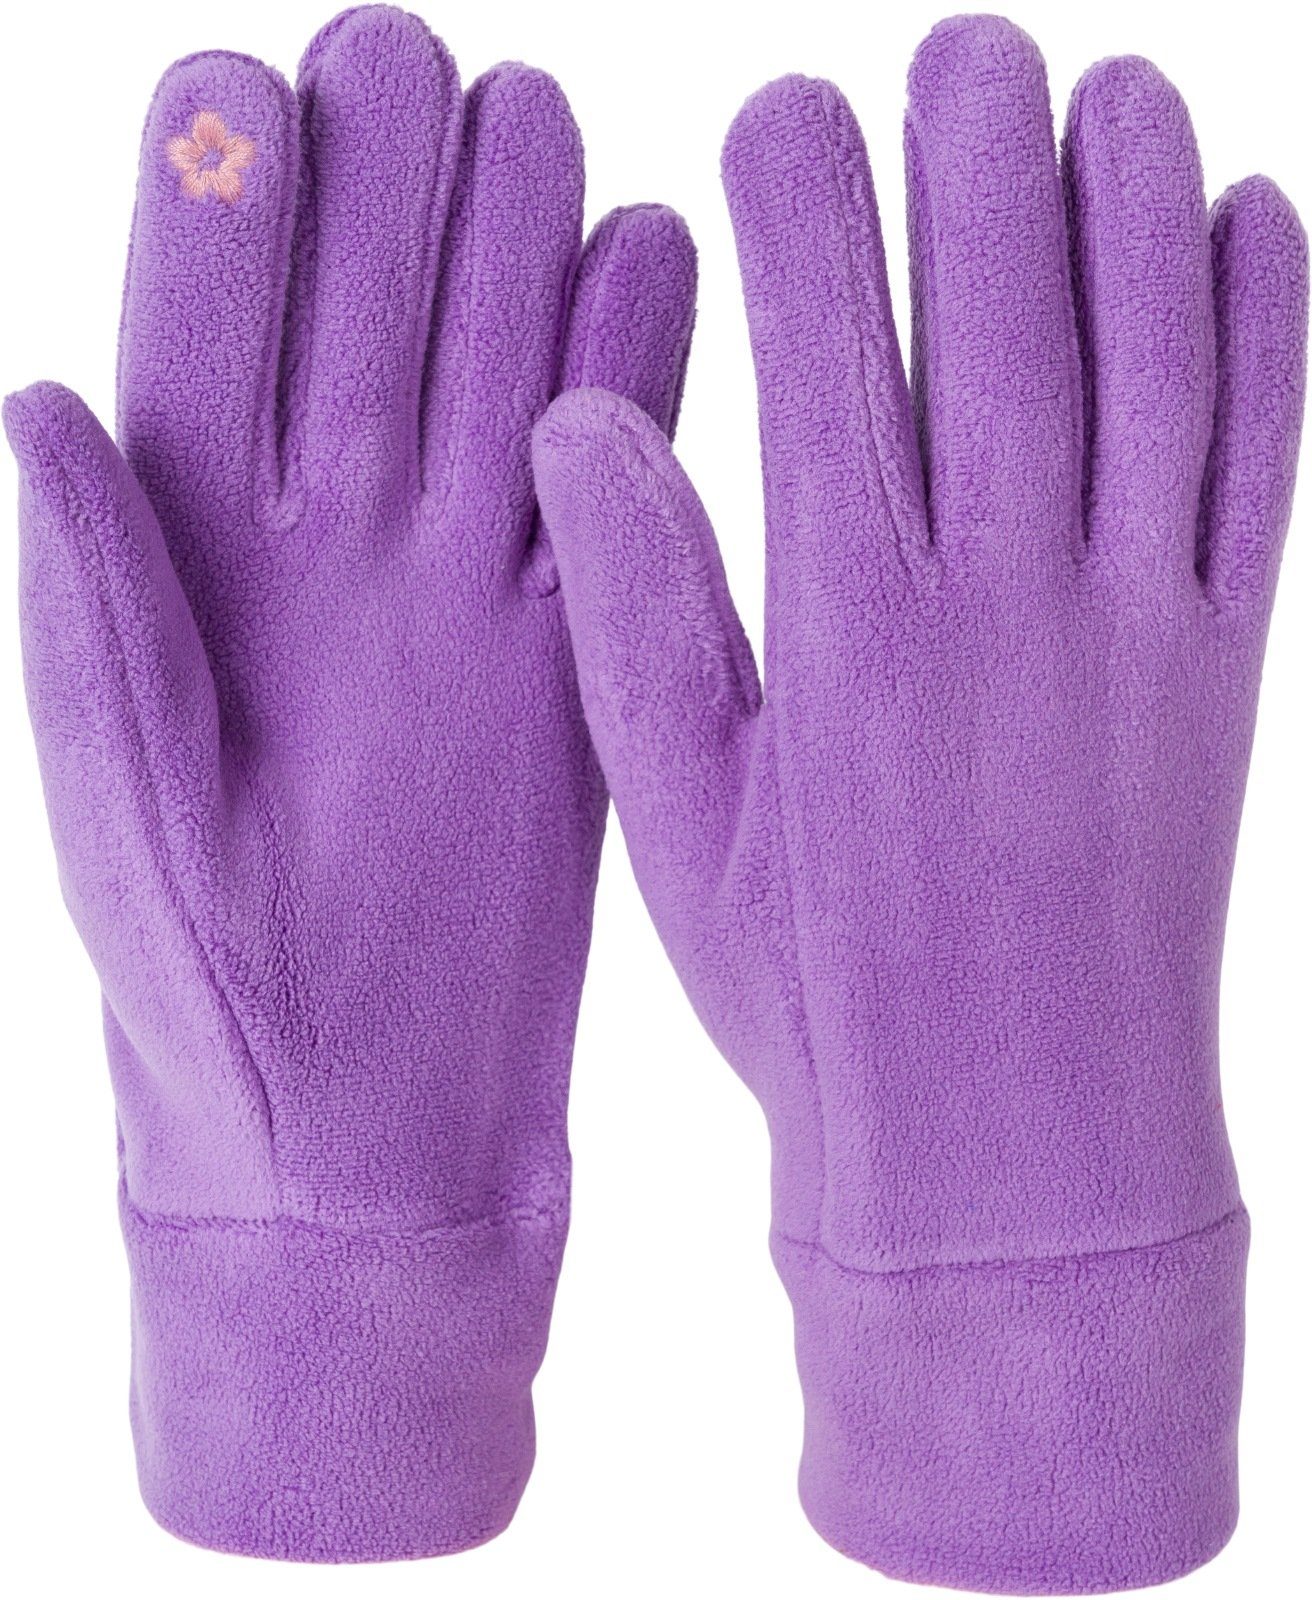 styleBREAKER Fleecehandschuhe Einfarbige Touchscreen Fleece Handschuhe Lila